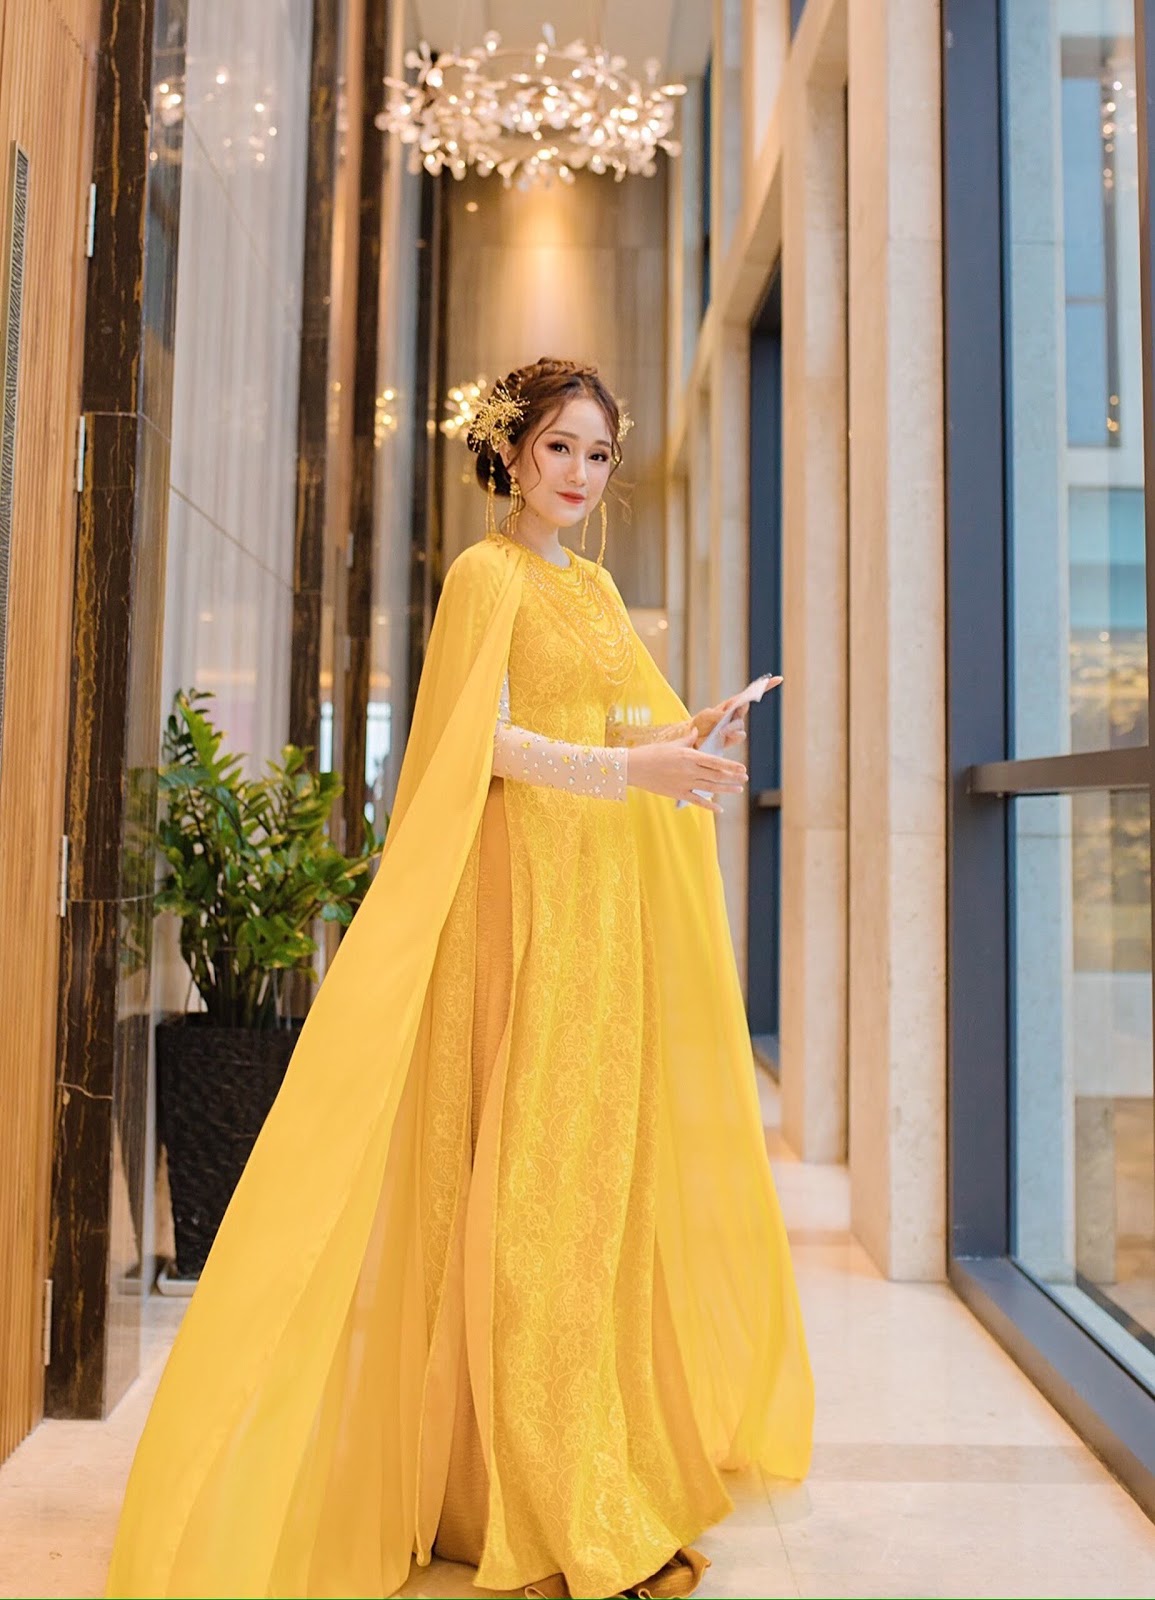 Nguyễn Trần Huyền Trang bất ngờ gây chú ý với phong cách thời trang đa dạng và ấn tượng - Hình 1